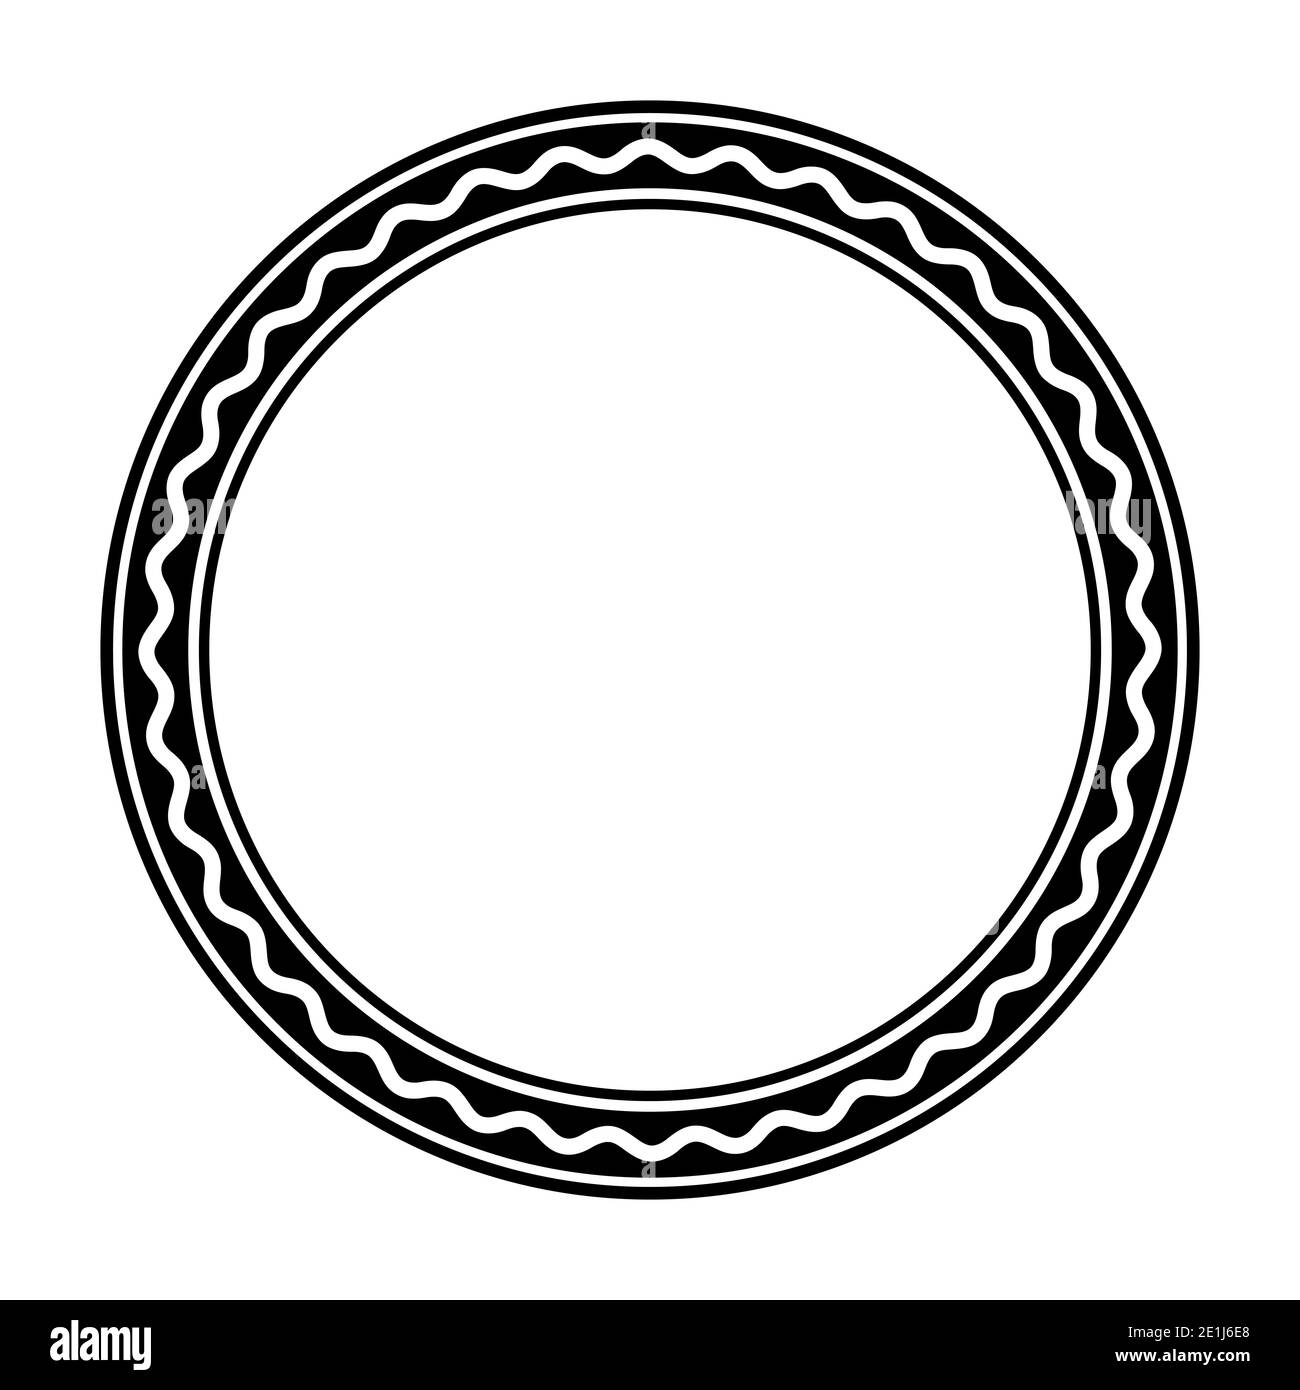 Cadre de cercle noir, avec une ligne ondulée blanche et audacieuse. Le cadre  du cercle est constitué de trois cercles et d'une ligne en serpentin. Cadre  circulaire et encadrement décoratif Photo Stock -